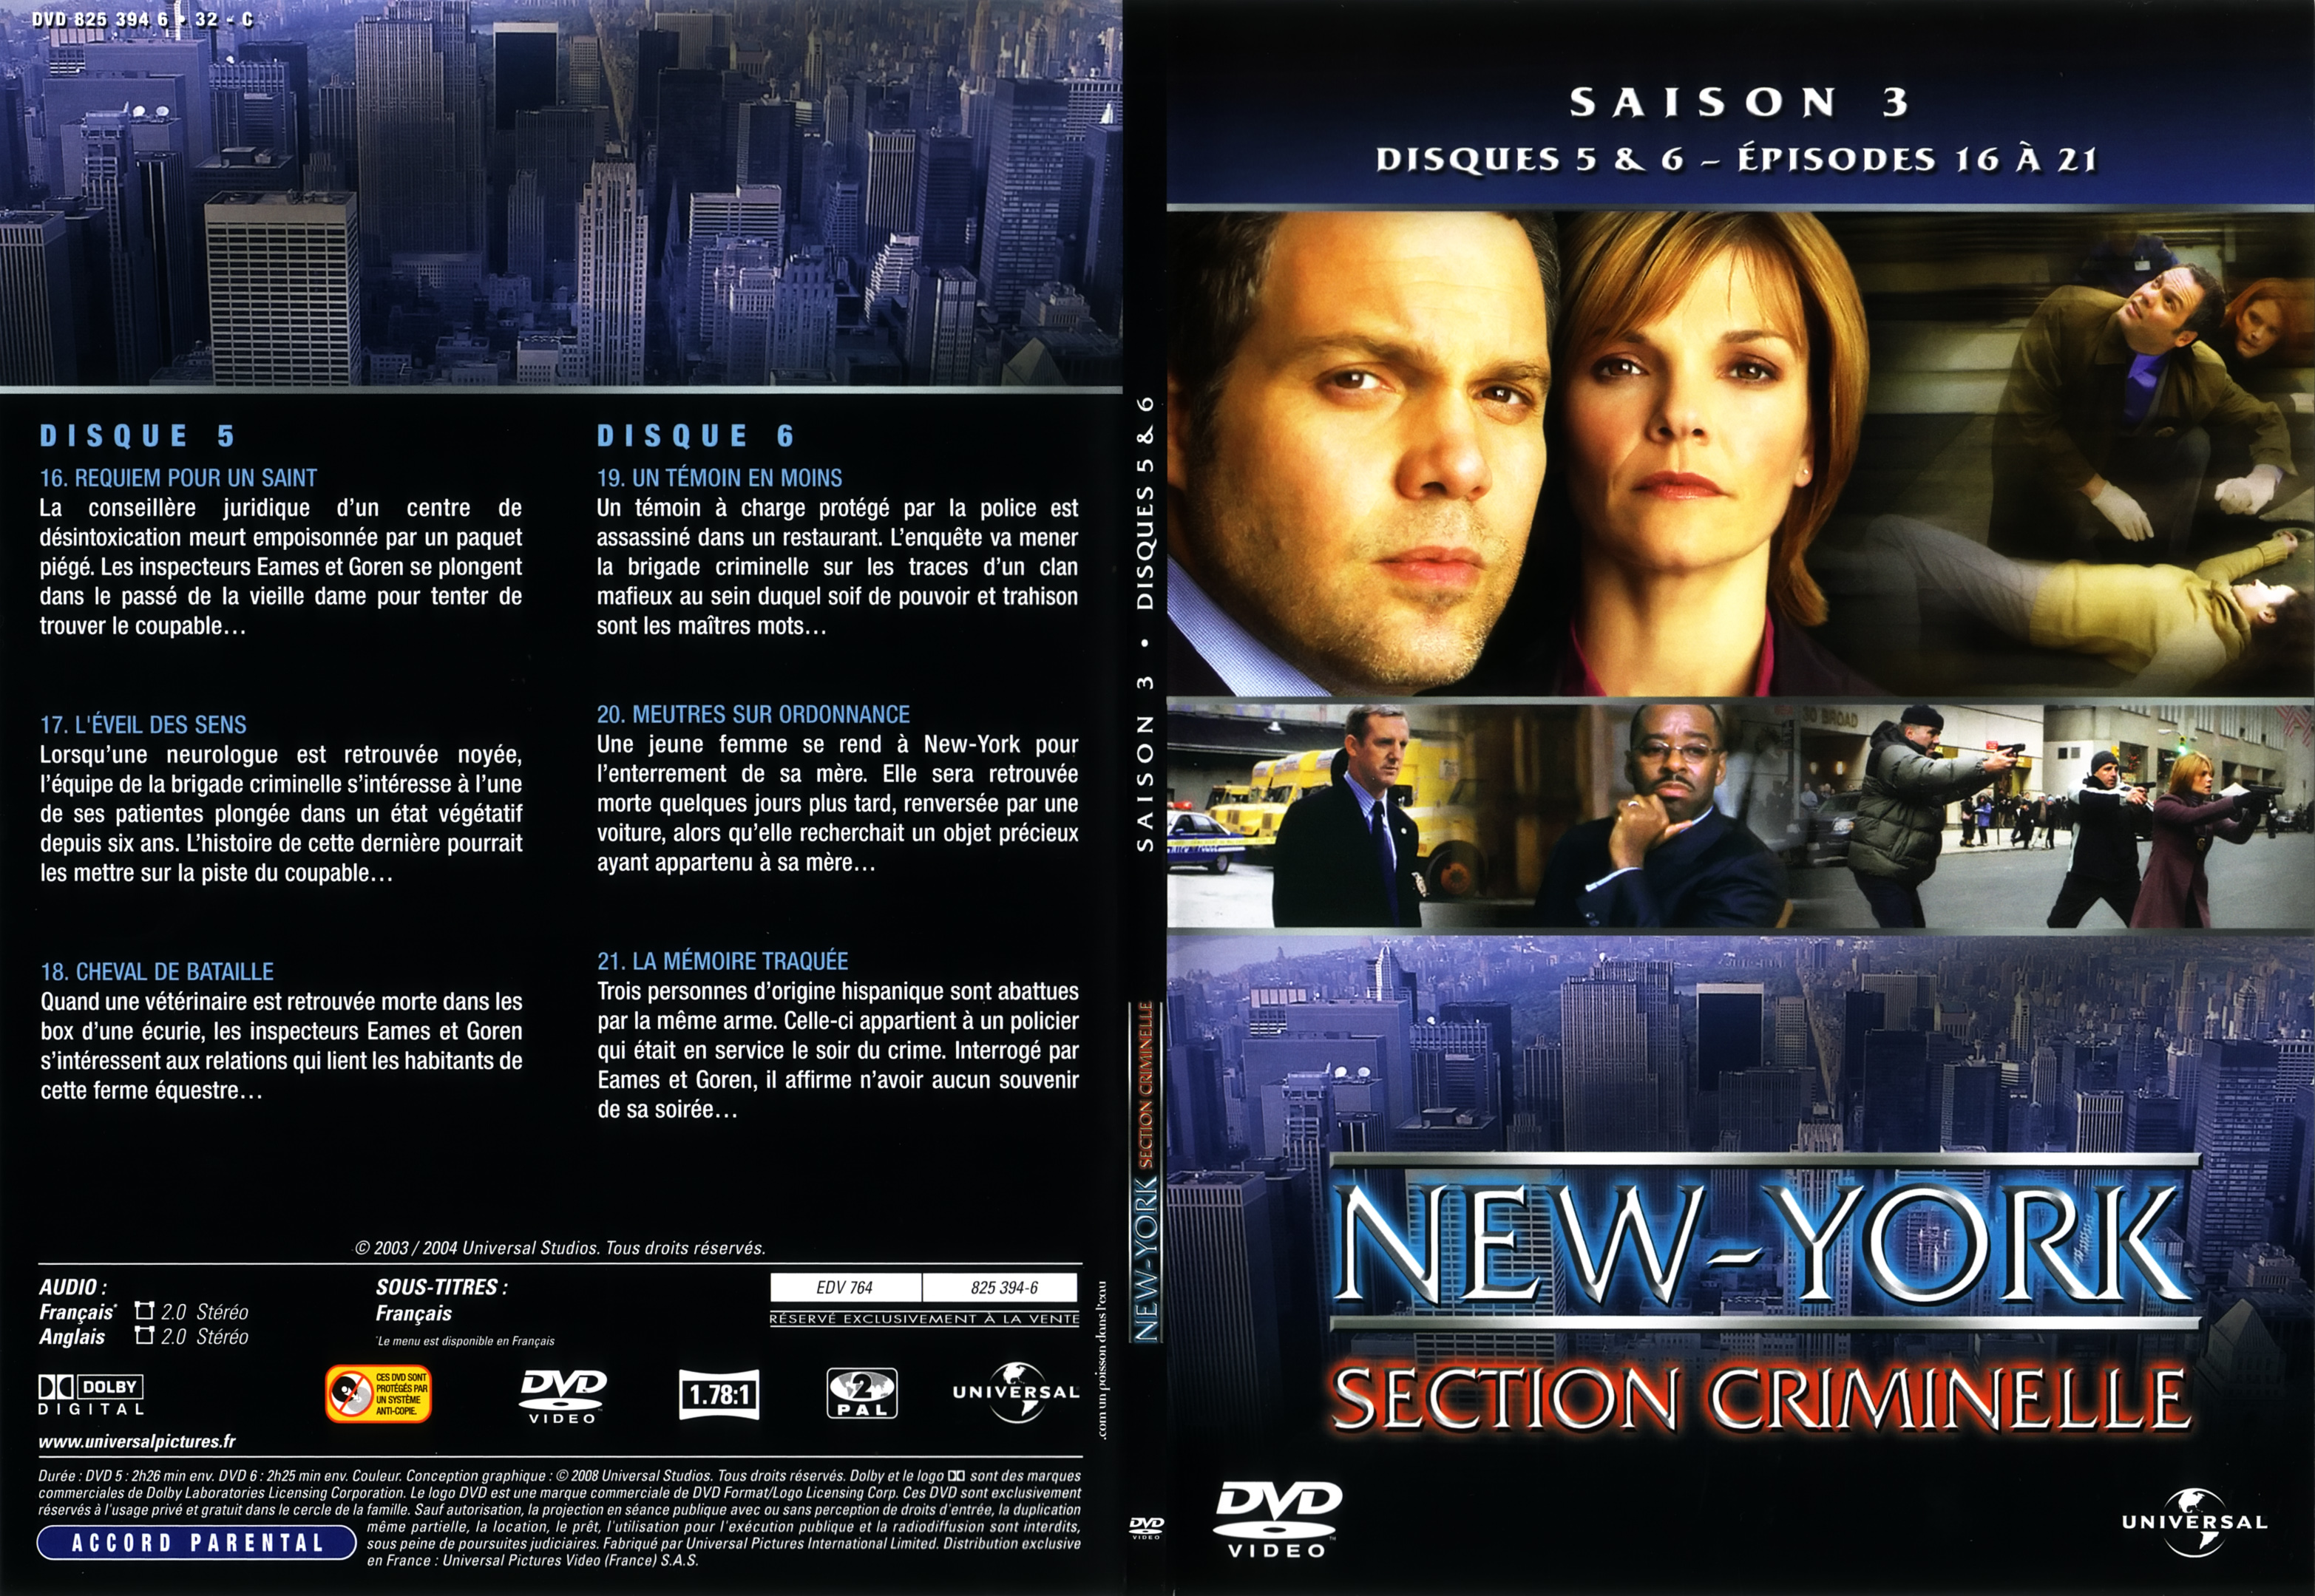 Jaquette DVD New York section criminelle saison 3 DVD 3